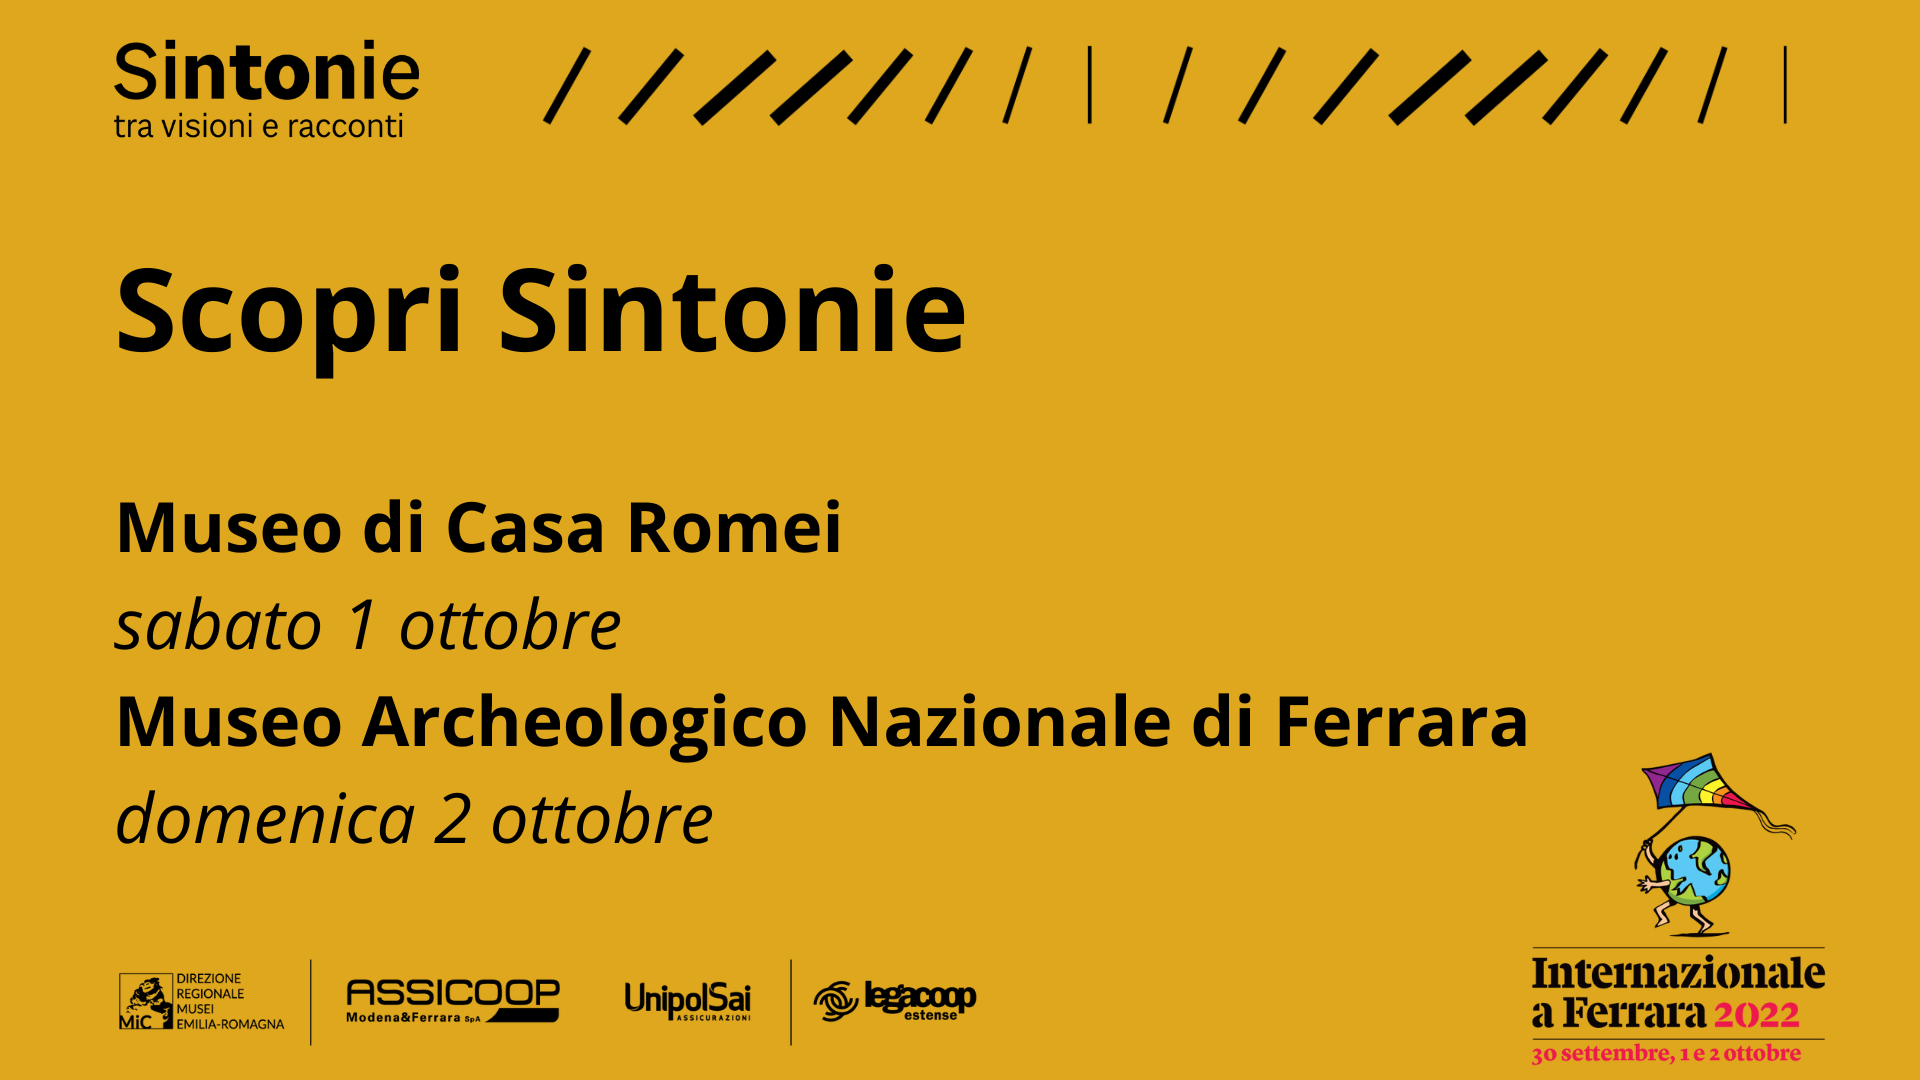 “Sintonie” nel programma ufficiale di Internazionale a Ferrara: visite guidate e un laboratorio l’1 e il 2 ottobre